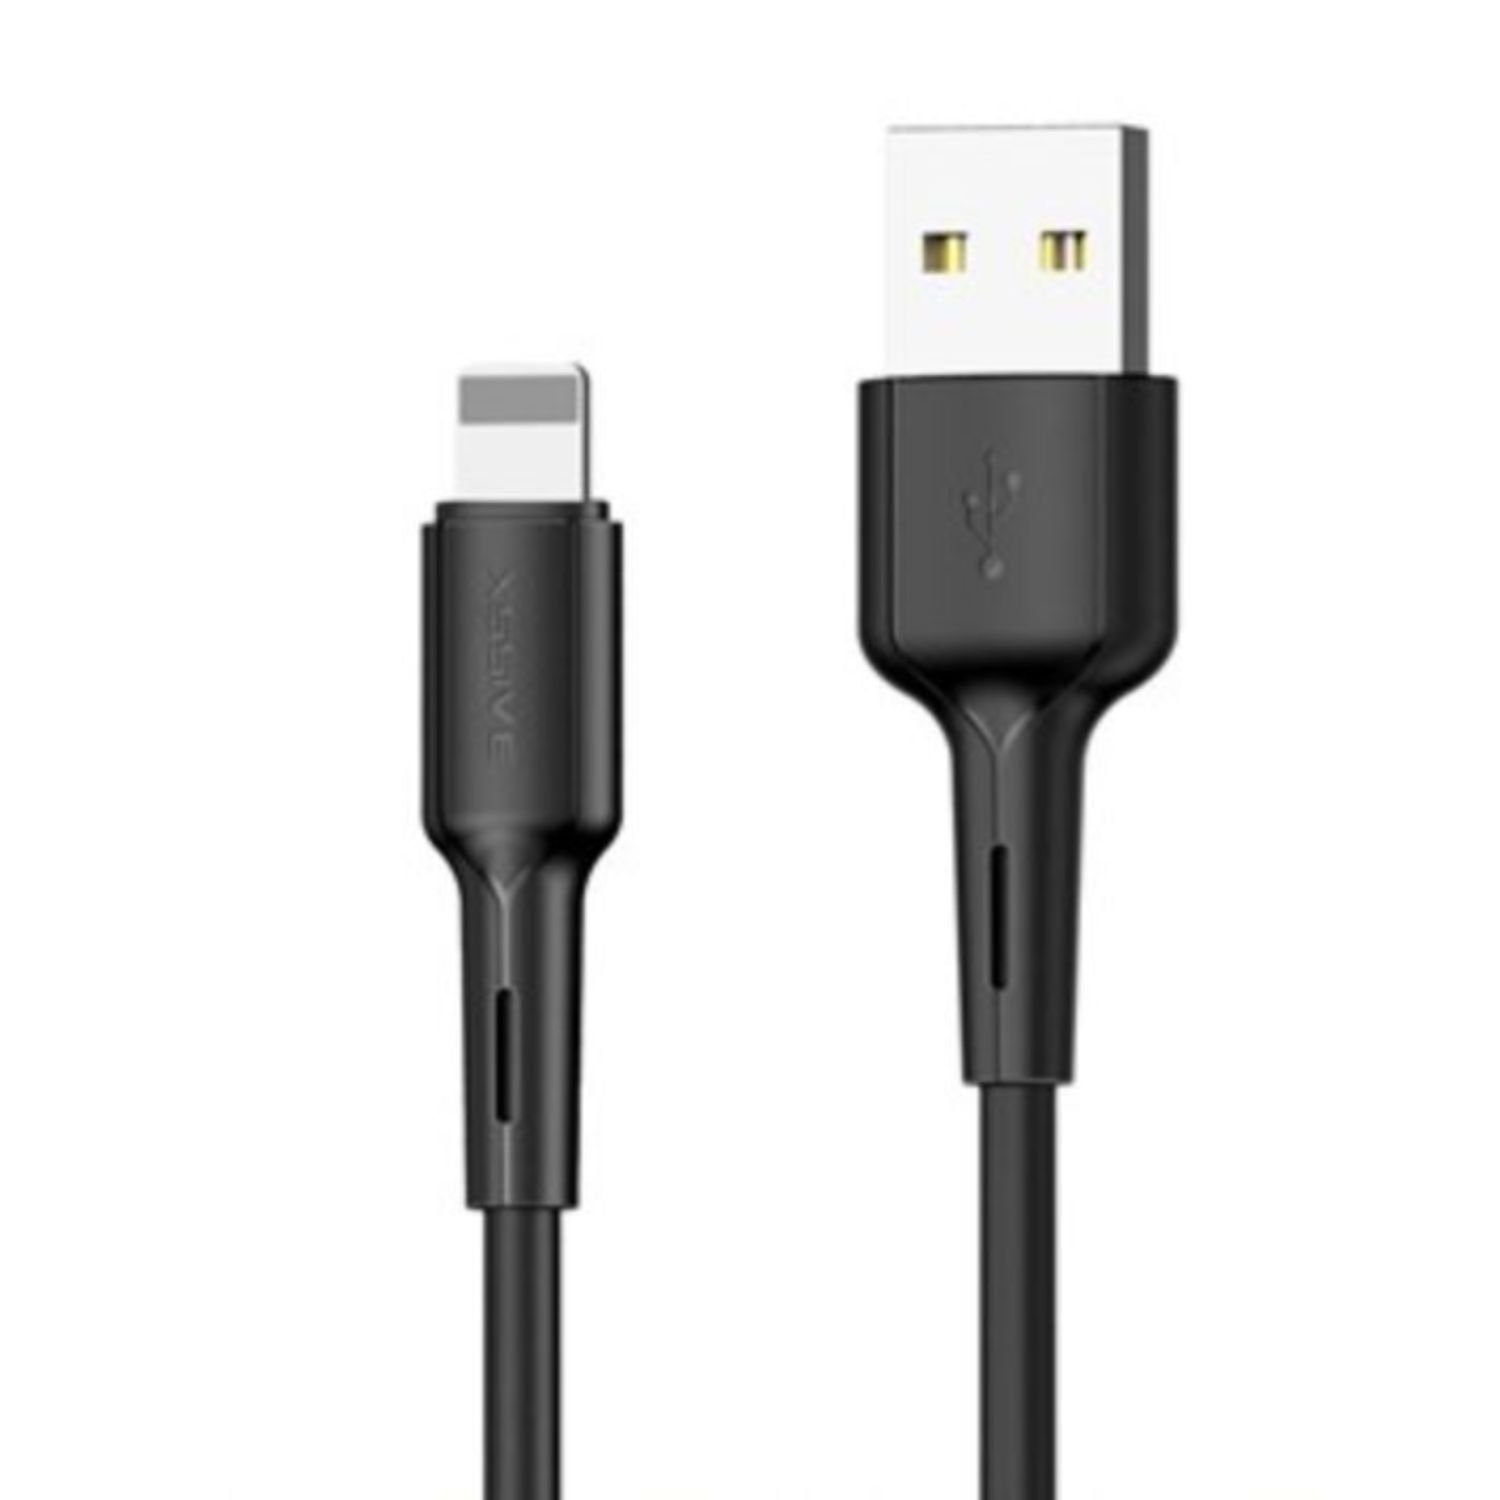 COFI 1453 Lade- und Datenkabel USB zu iOS Geräte 30cm 2.4A Output Verlängerungskabel